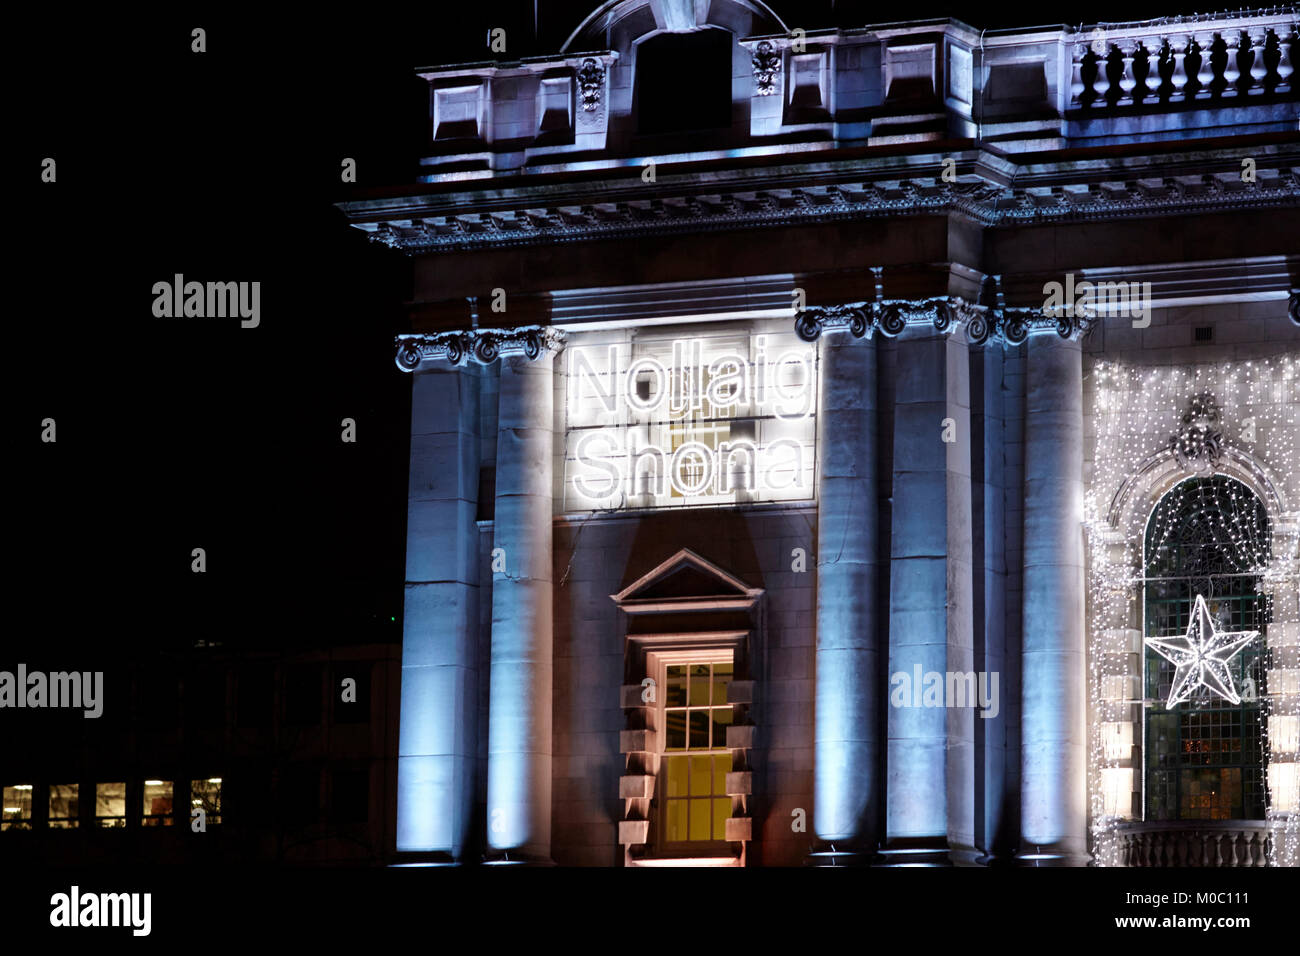 Nollaig Shona frohe Weihnachten in der irischen Low Energy LED-Weihnachtsbeleuchtung auf Belfast City Hall Nordirland uk Stockfoto